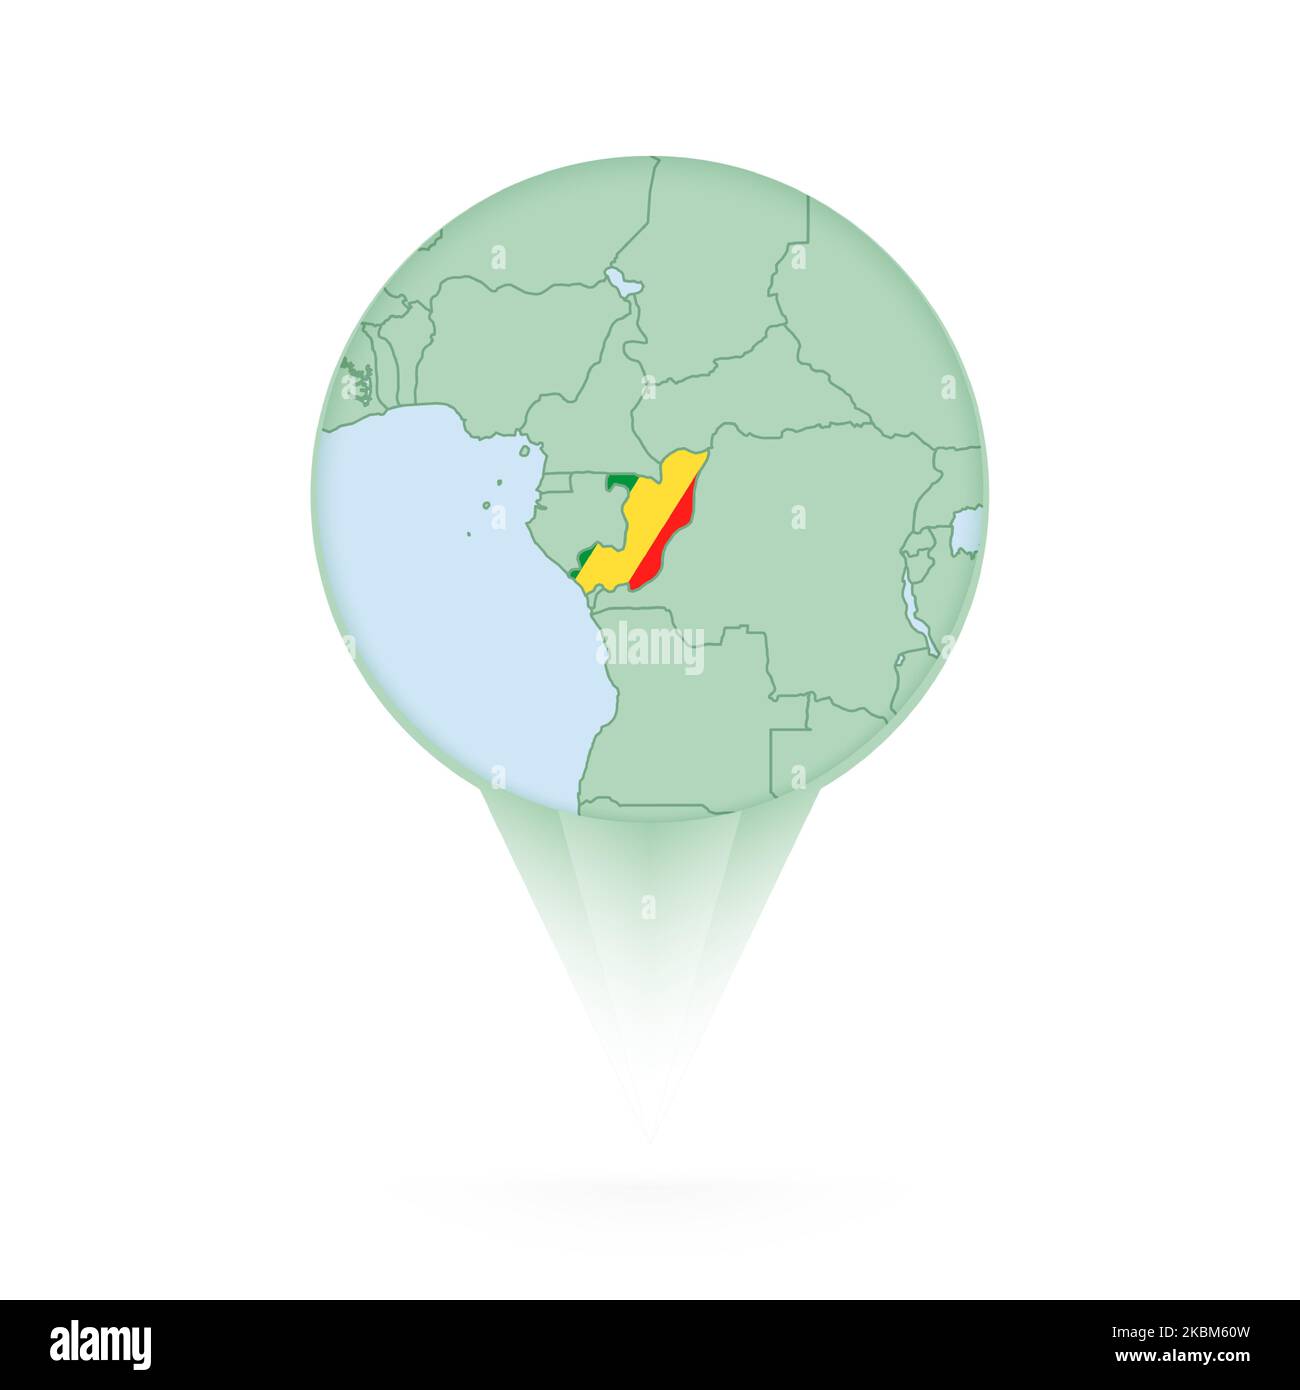 Carte du Congo, icône de situation élégante avec carte et drapeau du Congo. Icône PIN verte. Illustration de Vecteur